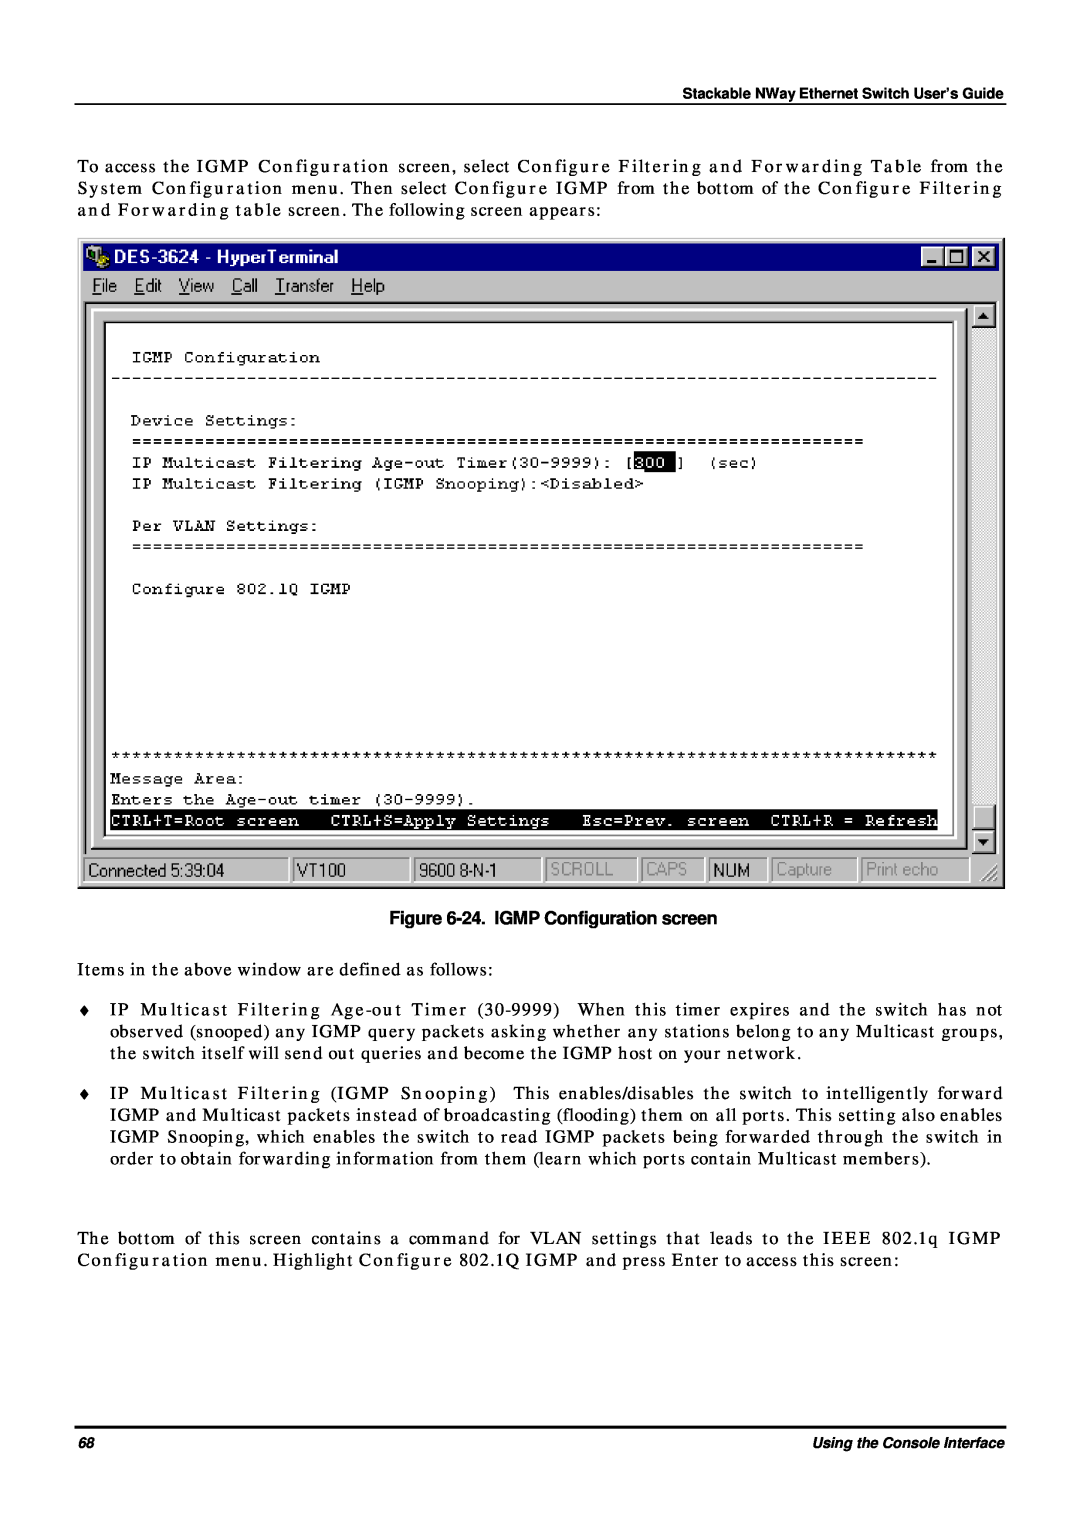 D-Link DES-3624 manual 24. IGMP Configuration screen 